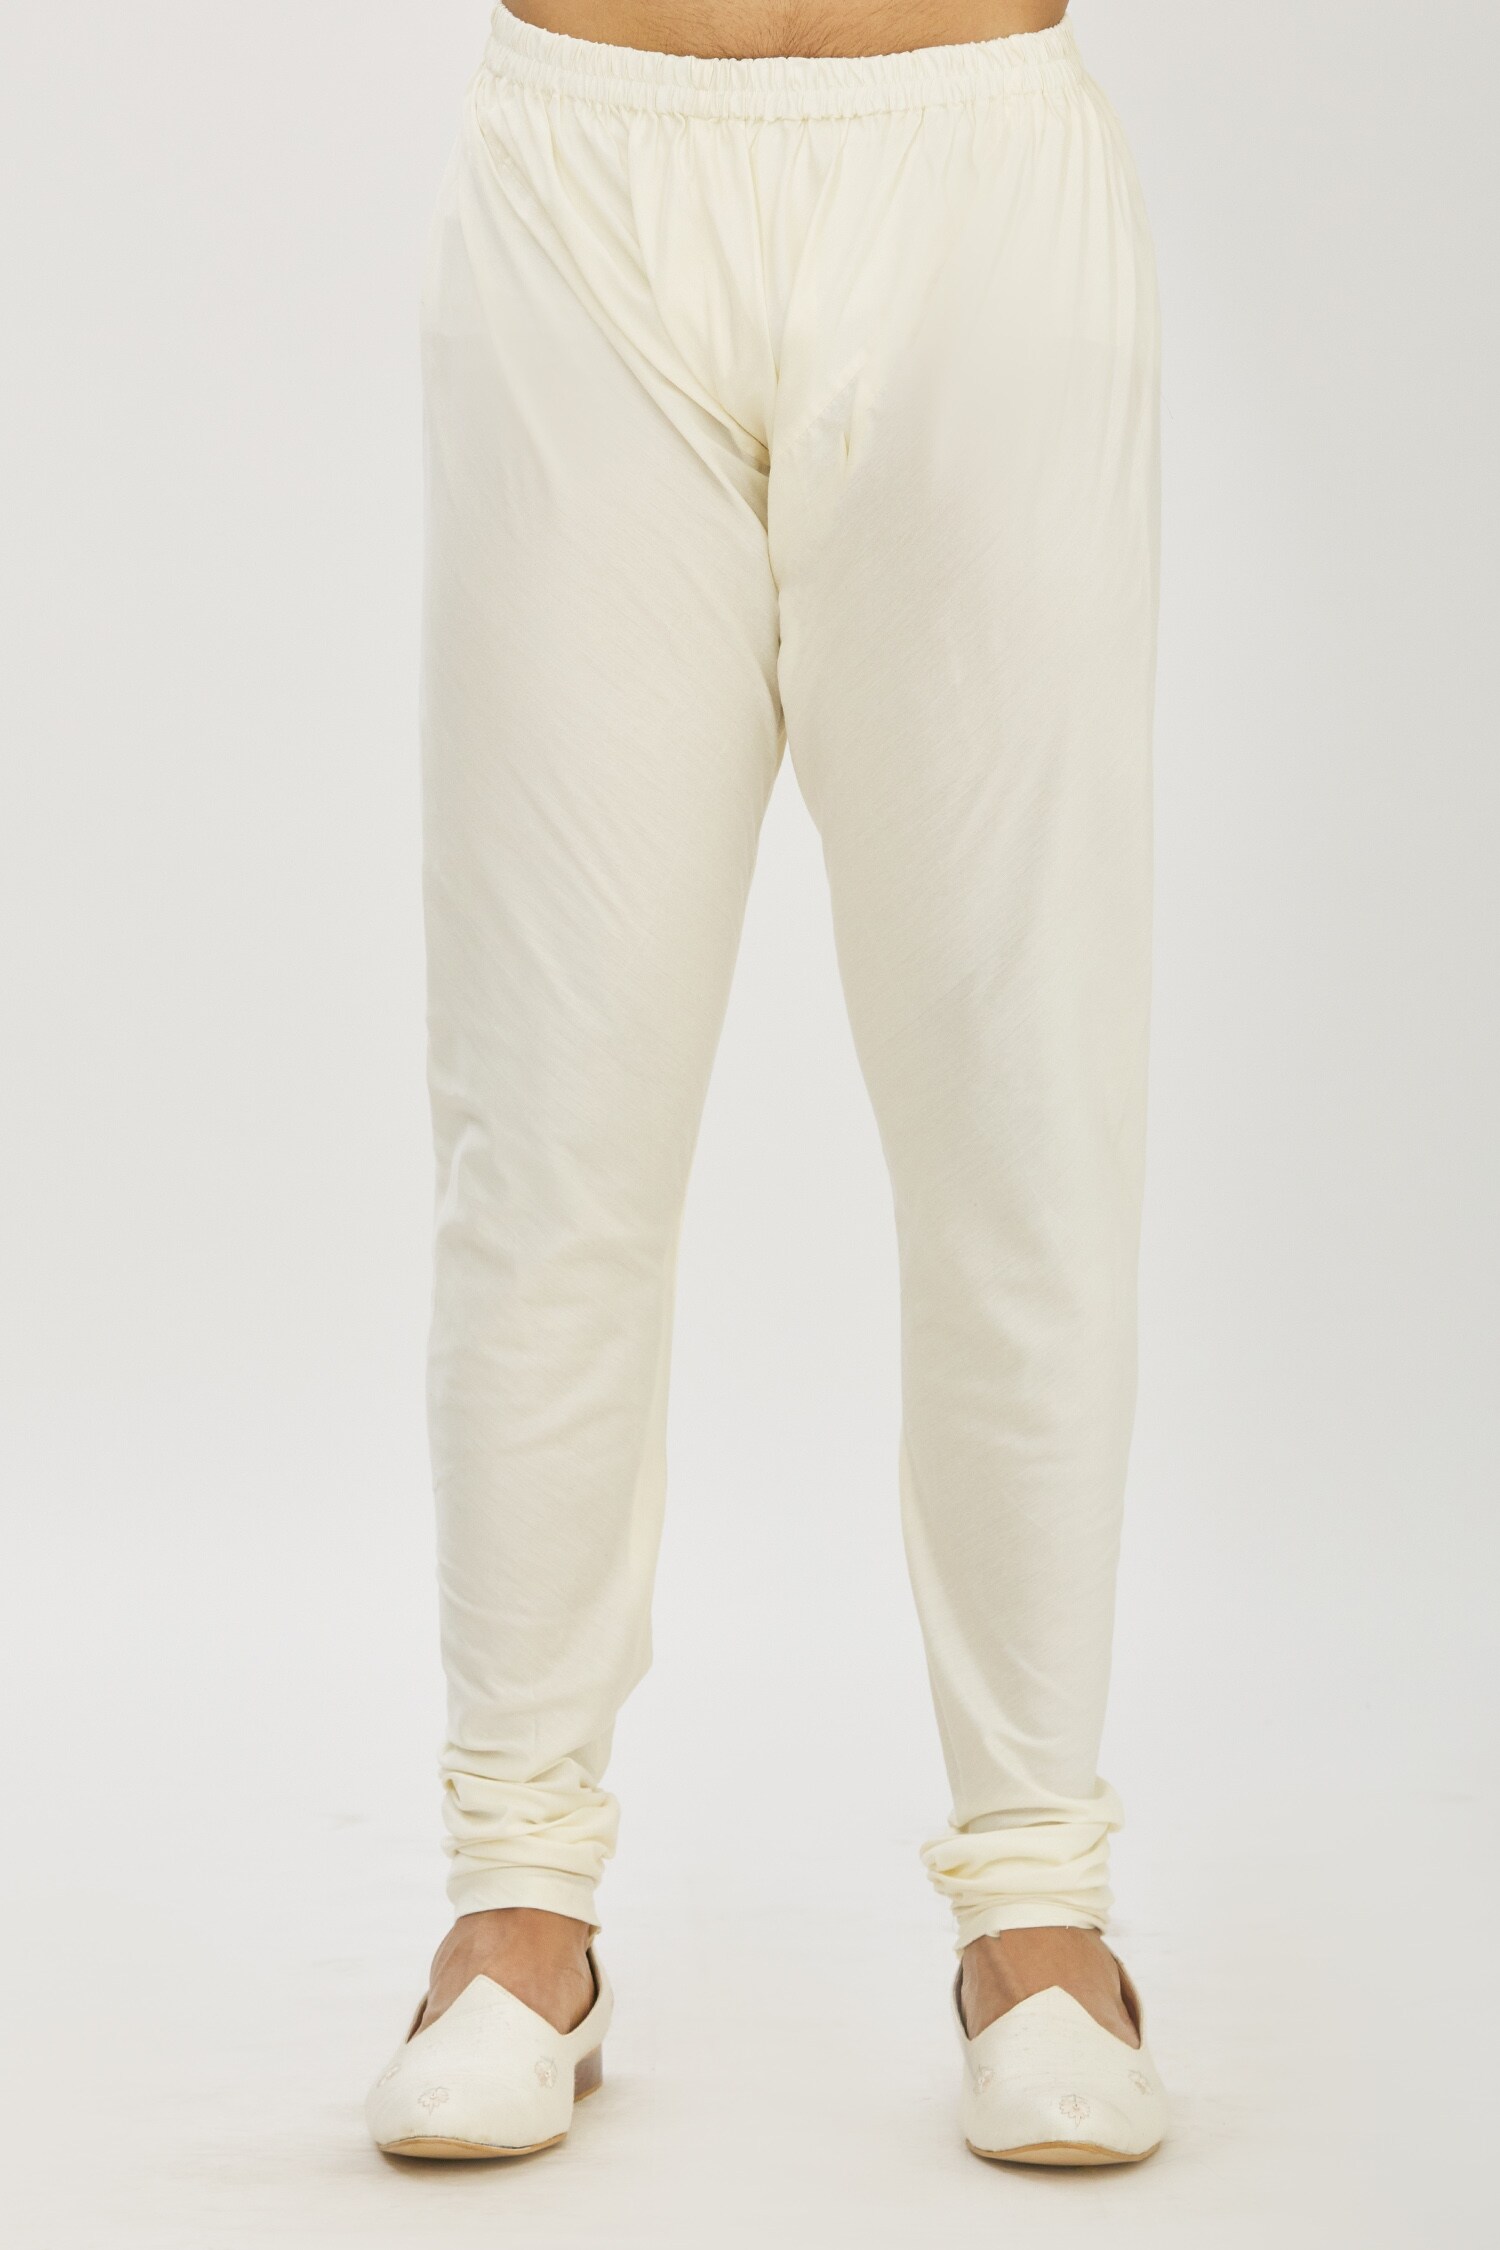 Churidar Cotton pant/white